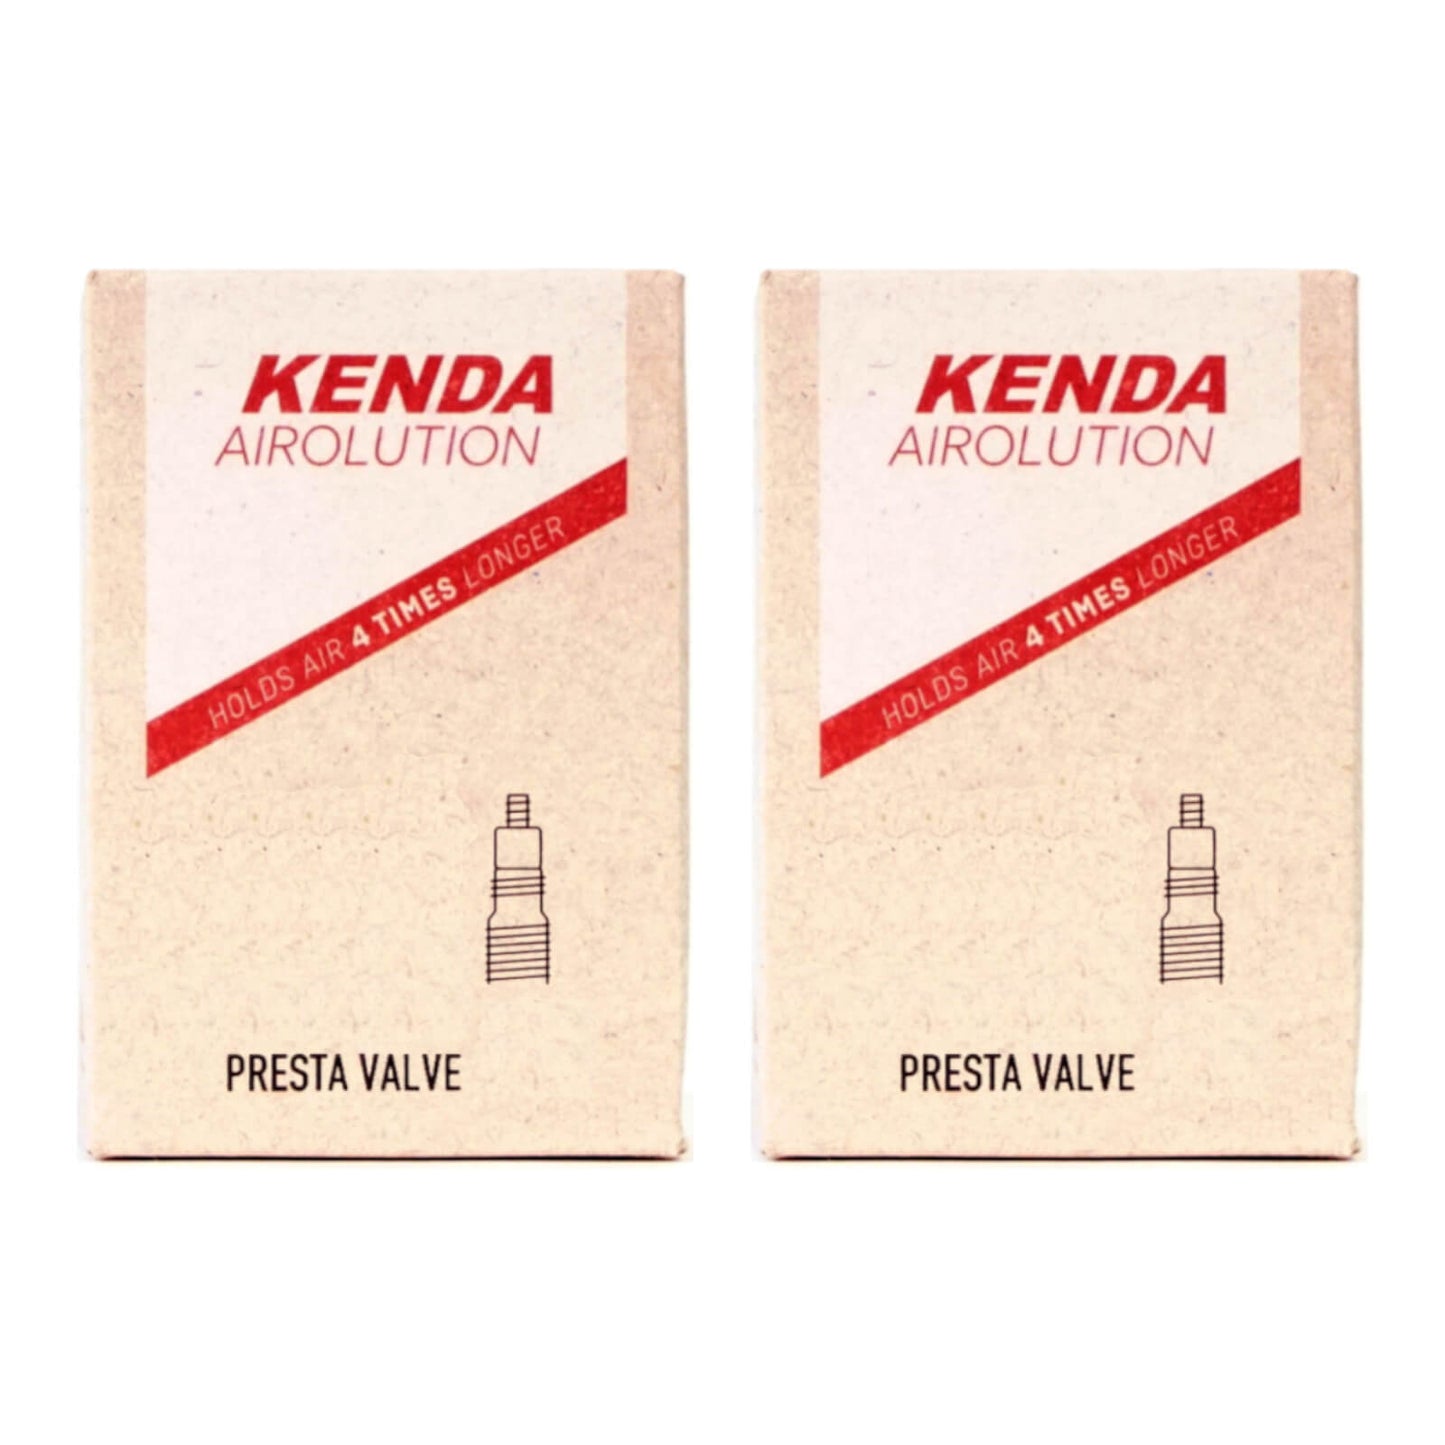 Kenda Airolution 26x2.0-2.4" 26 Inch Presta Valve Bike Inner Tube Pack of 2